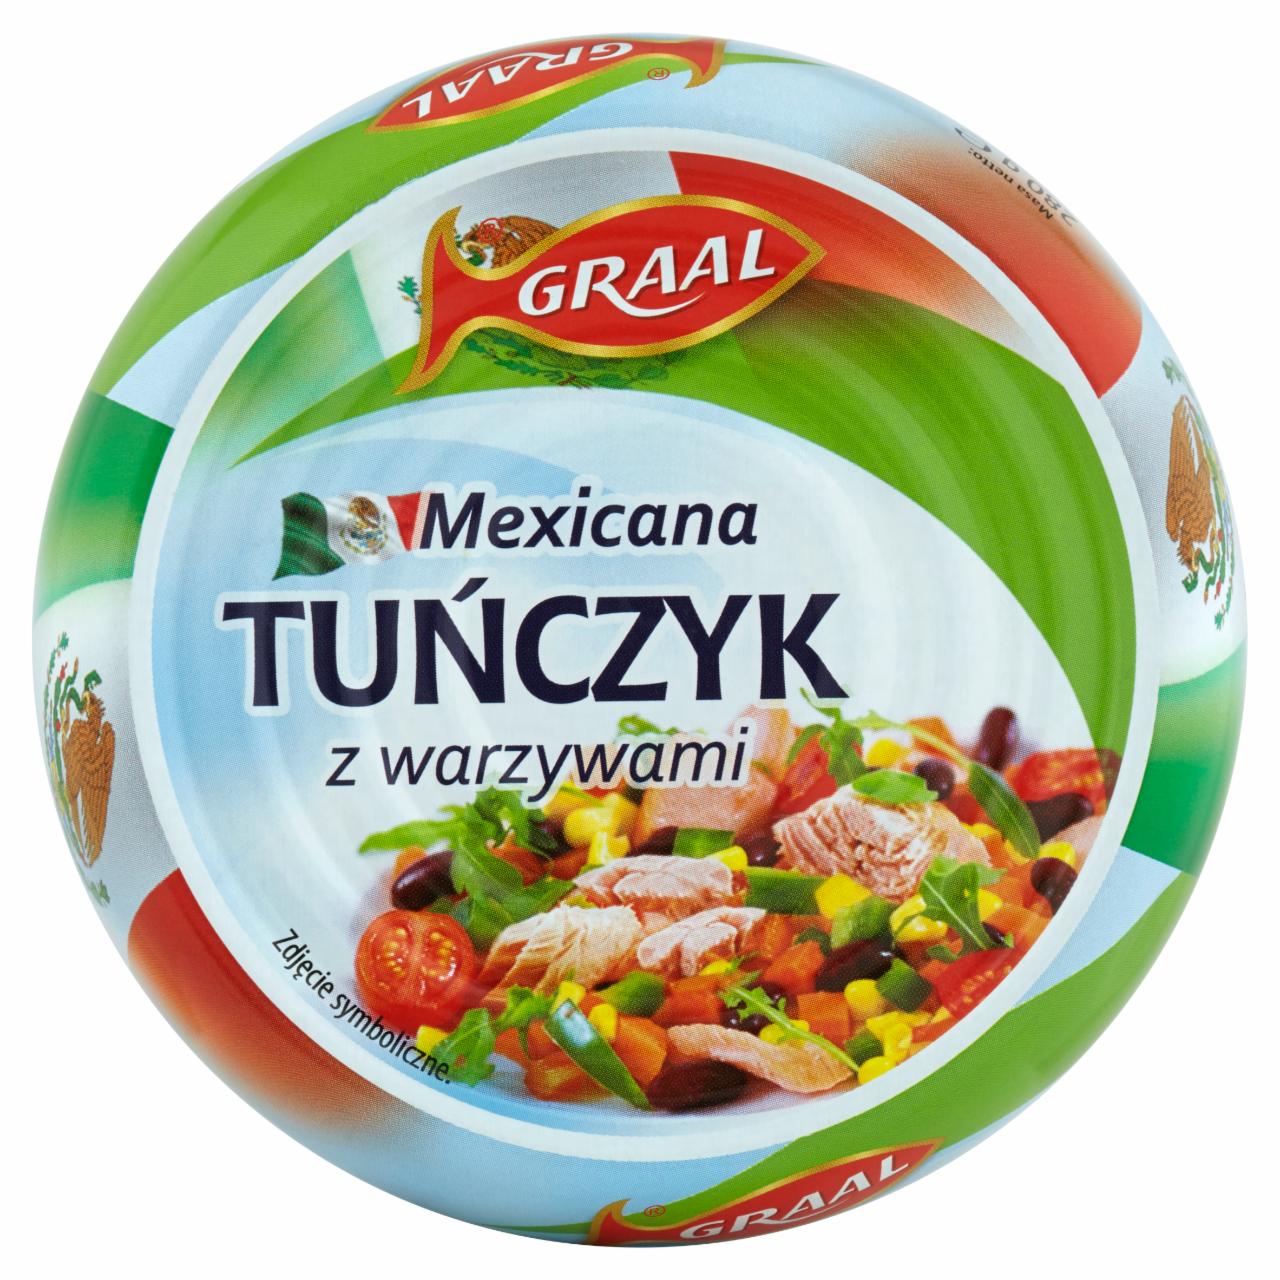 Zdjęcia - Mexicana tuńczyk z warzywami Graal